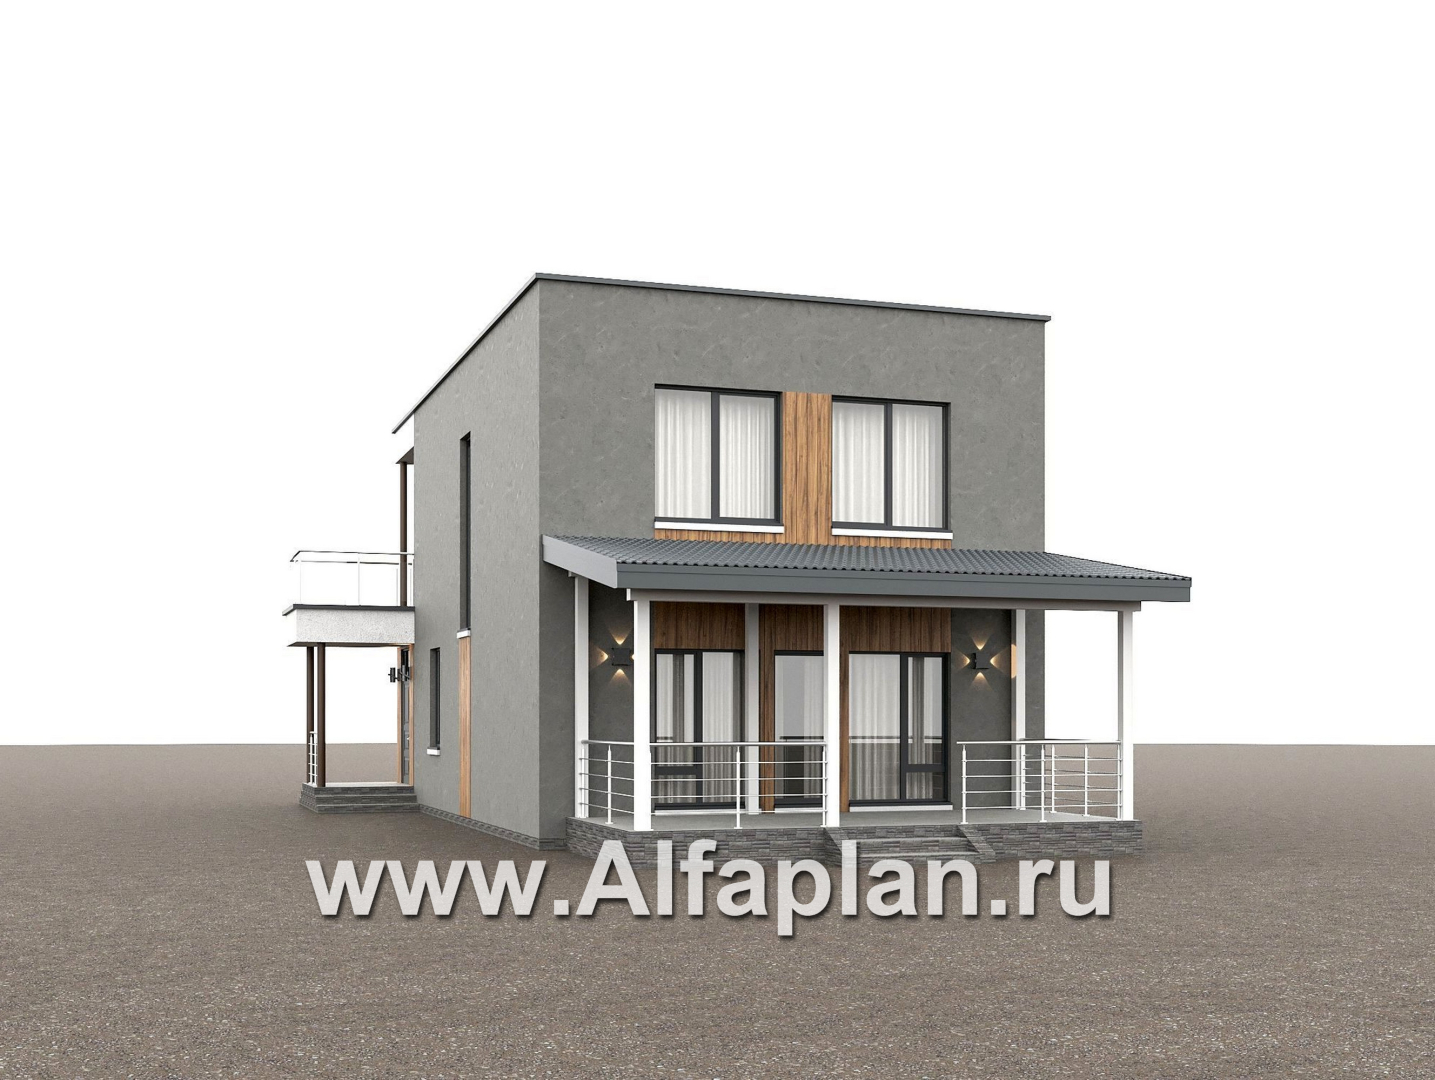 «Викинг» - проект дома, 2 этажа, с сауной и с террасой, в стиле хай-тек - дизайн дома №3